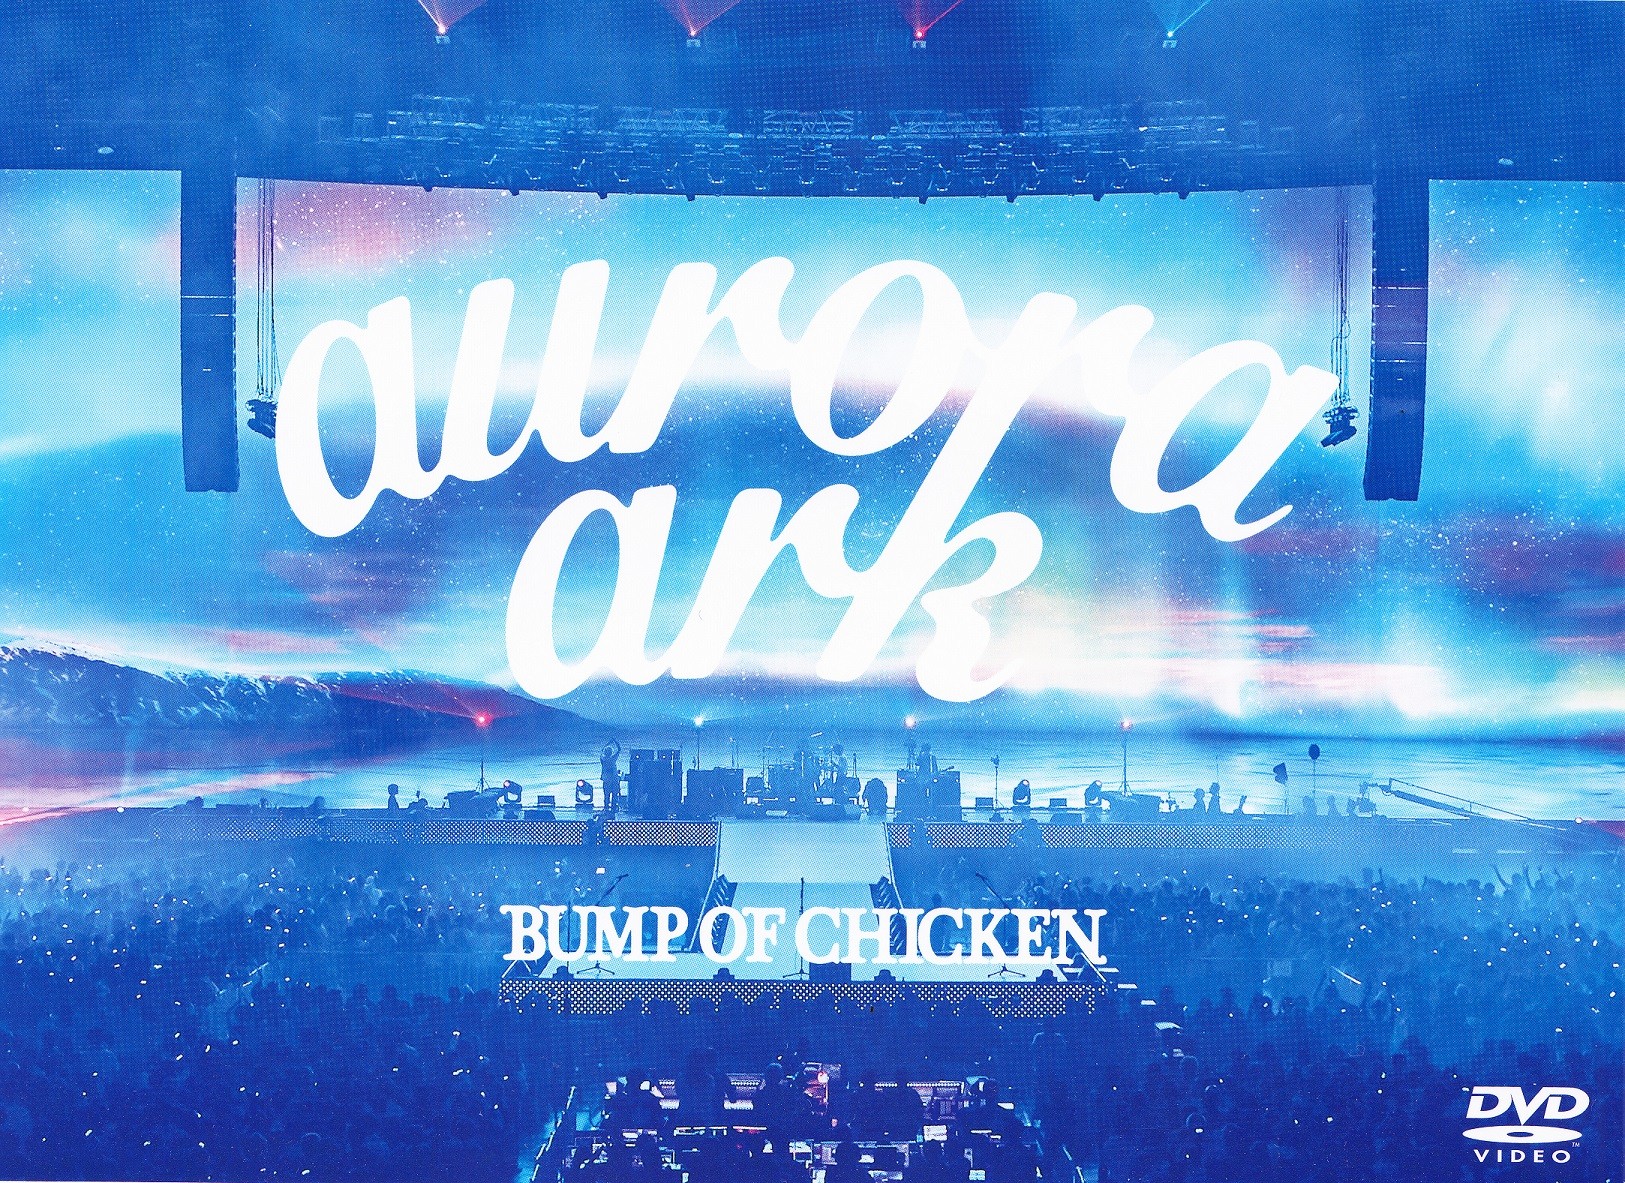 BUMP OF CHICKEN aurora ark DVD | skisharp.com